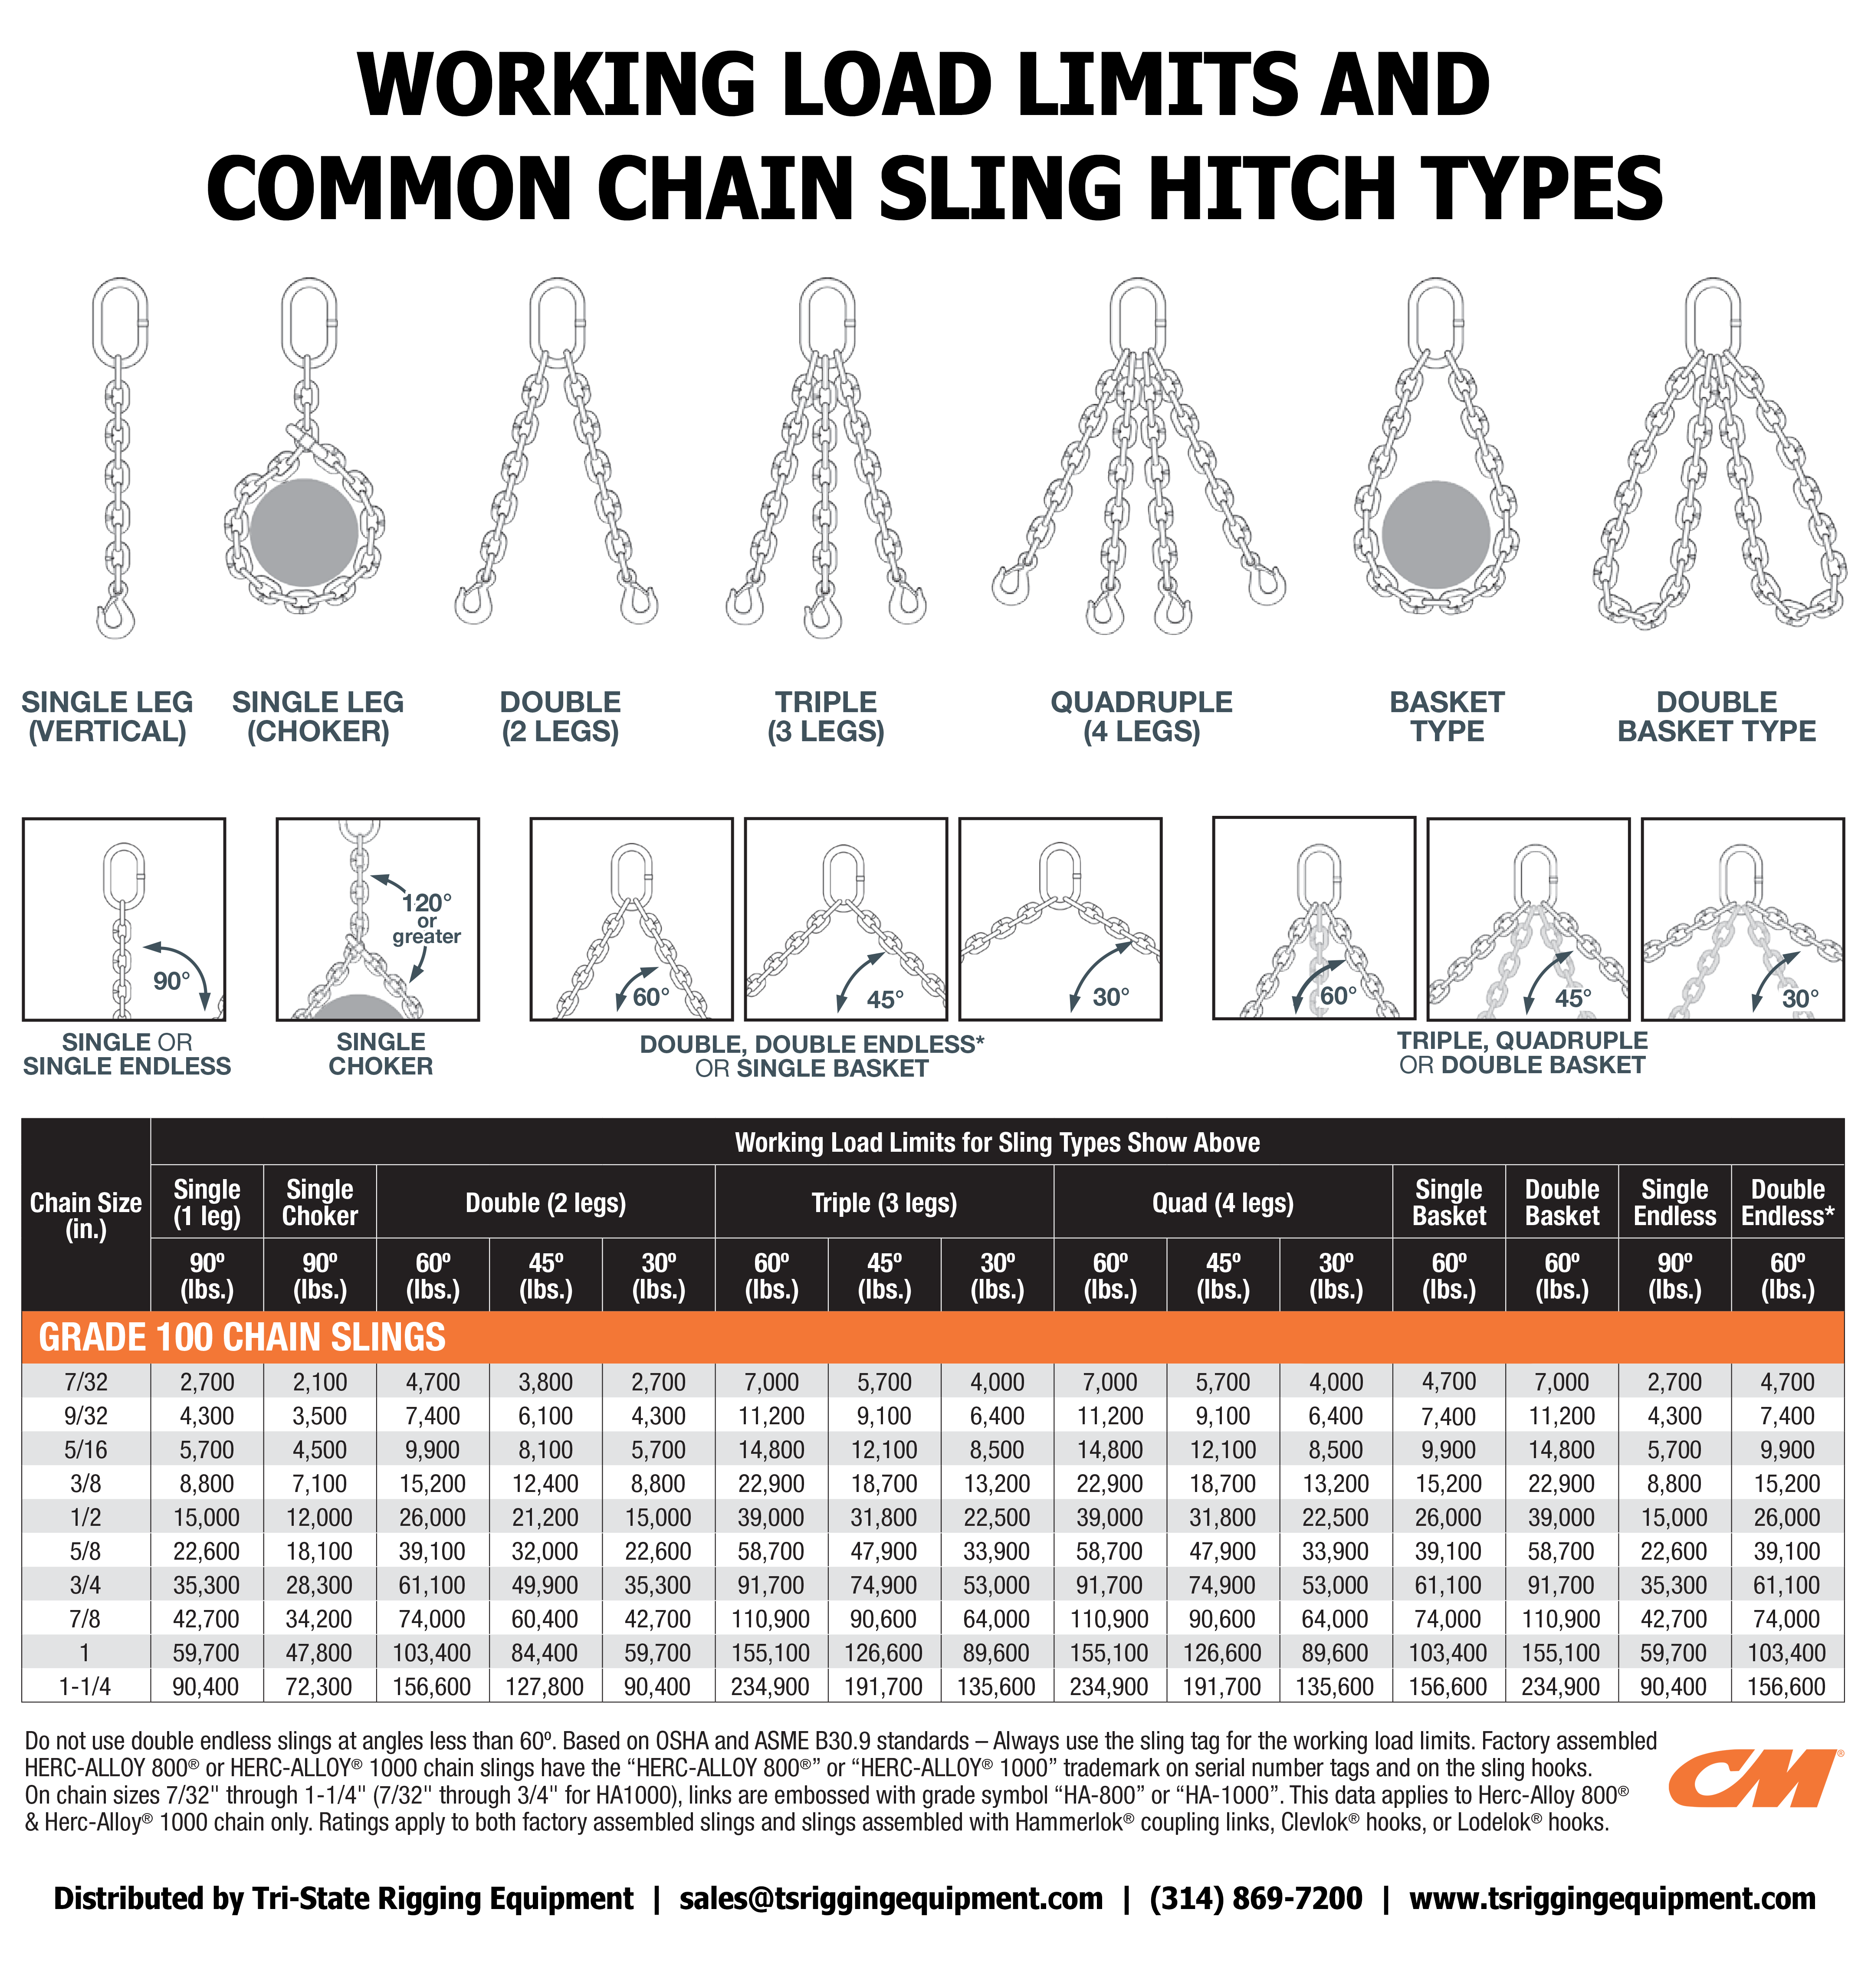 17 Ton Capacity, 3/4 in. SingleLeg, Grade 100, Mechanical Chain Sling